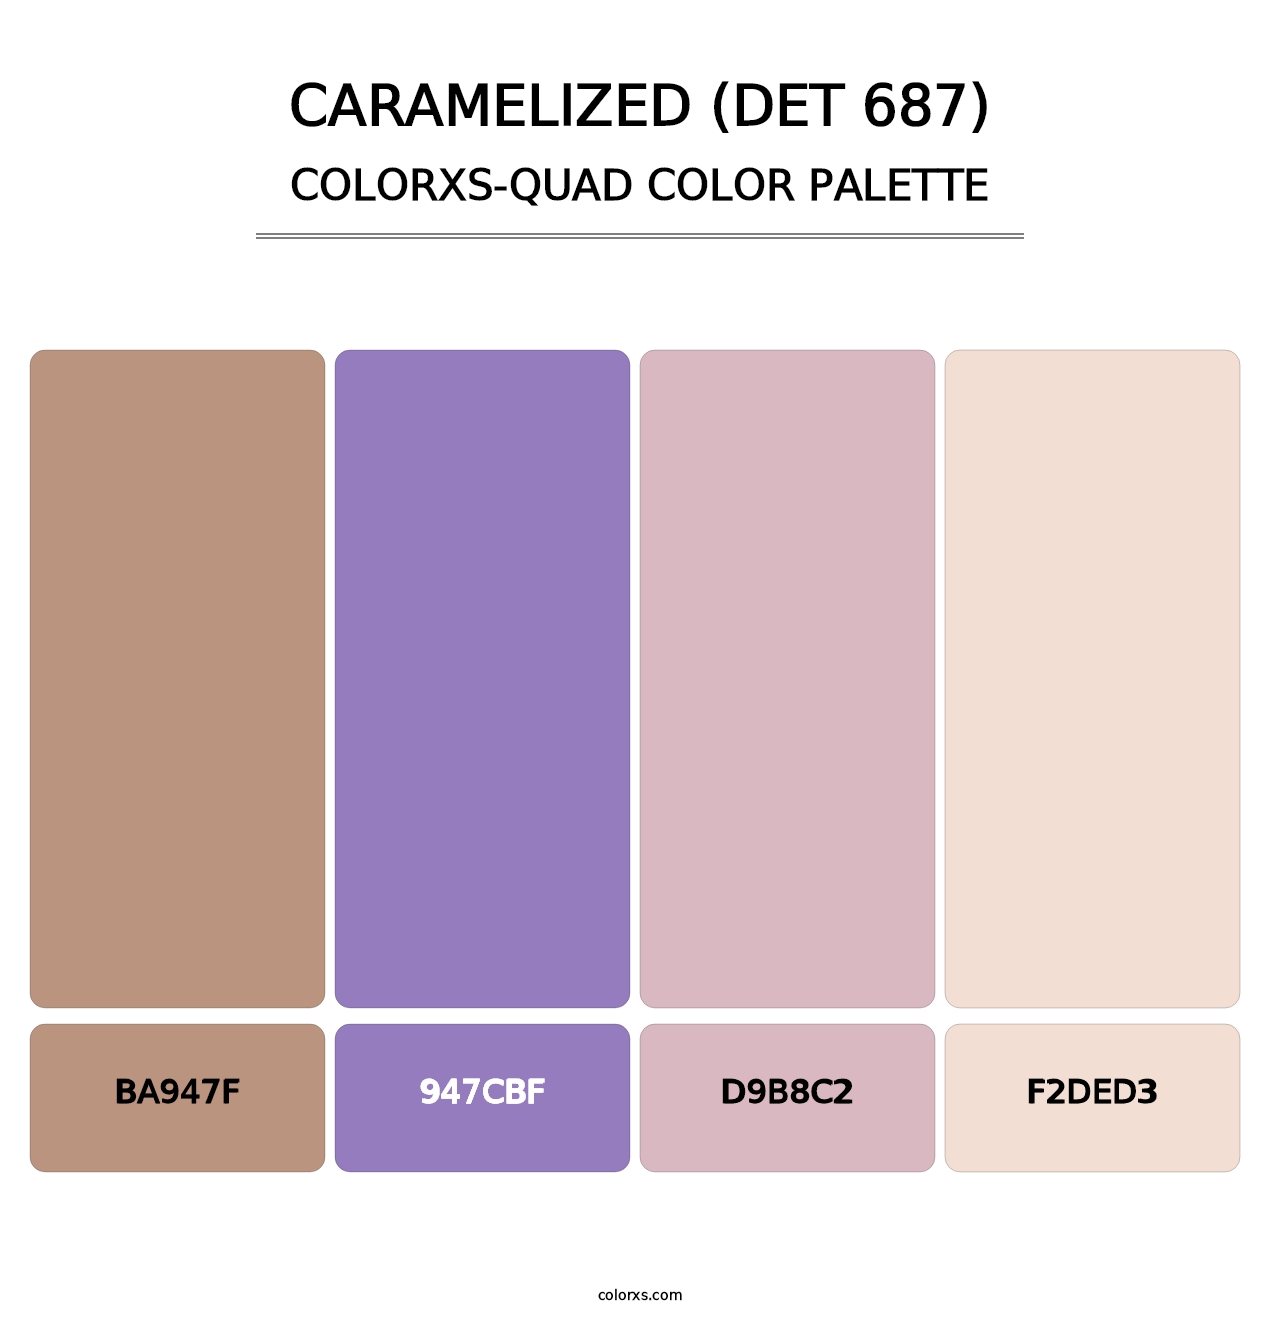 Caramelized (DET 687) - Colorxs Quad Palette